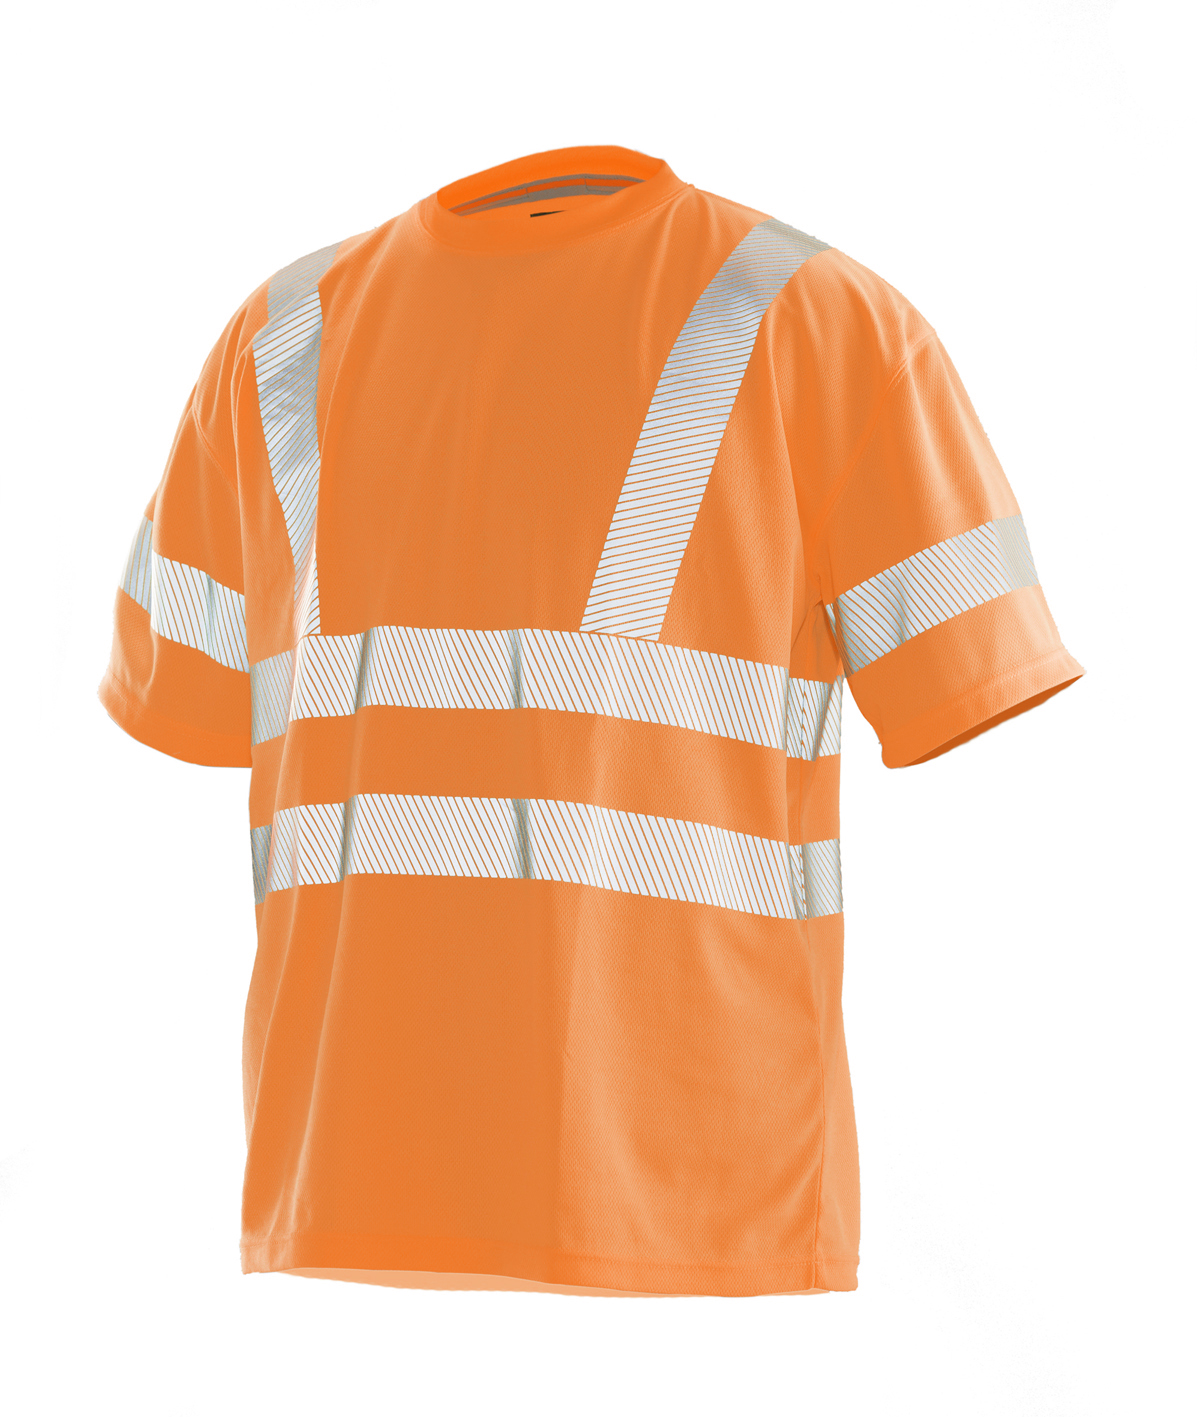 5584 T-shirt Hi-Vis S orange